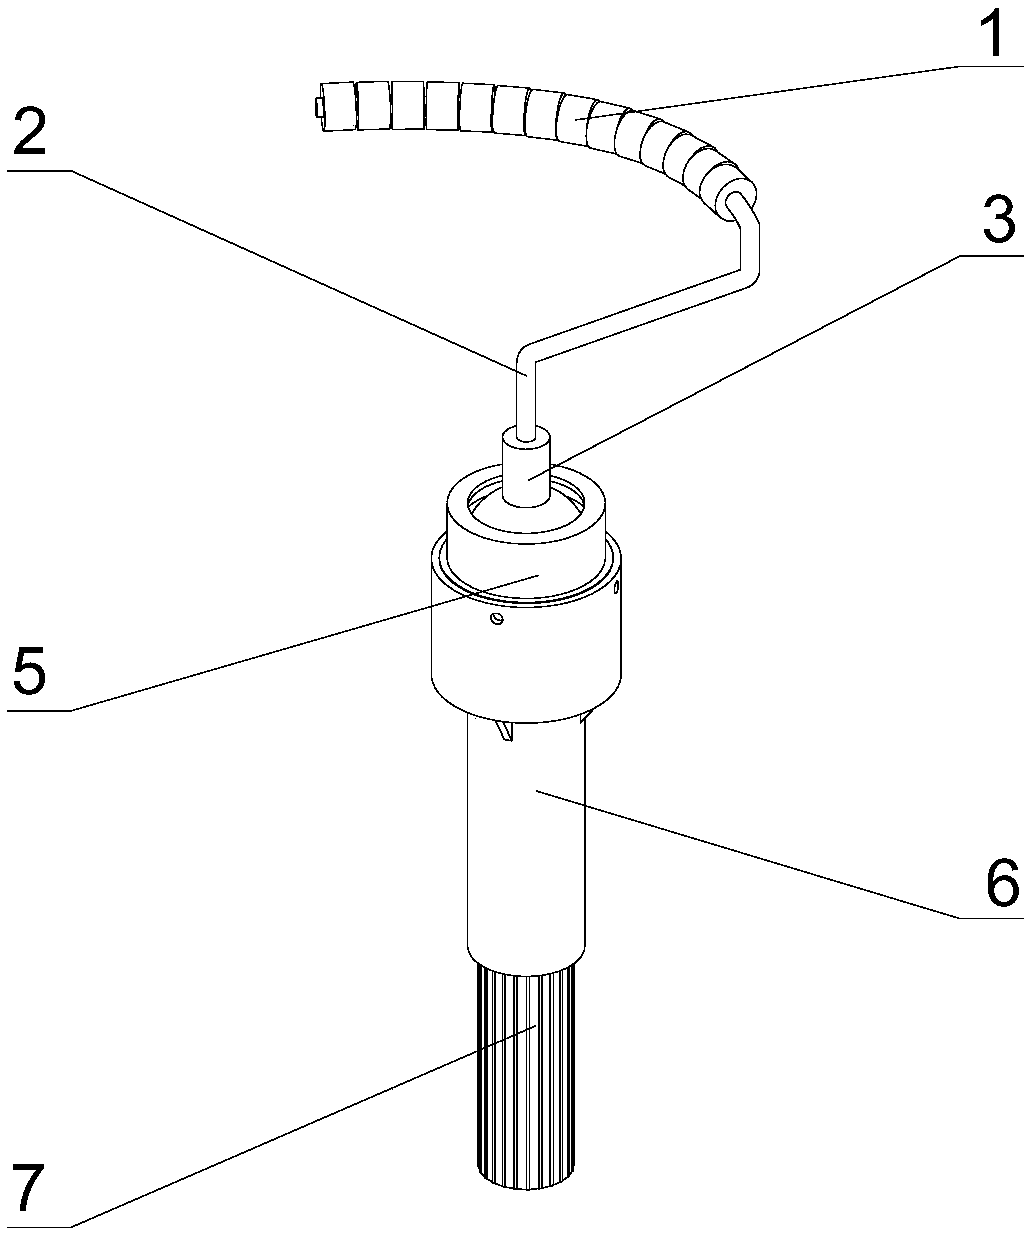 Simple multi-angle adjustable roller brush